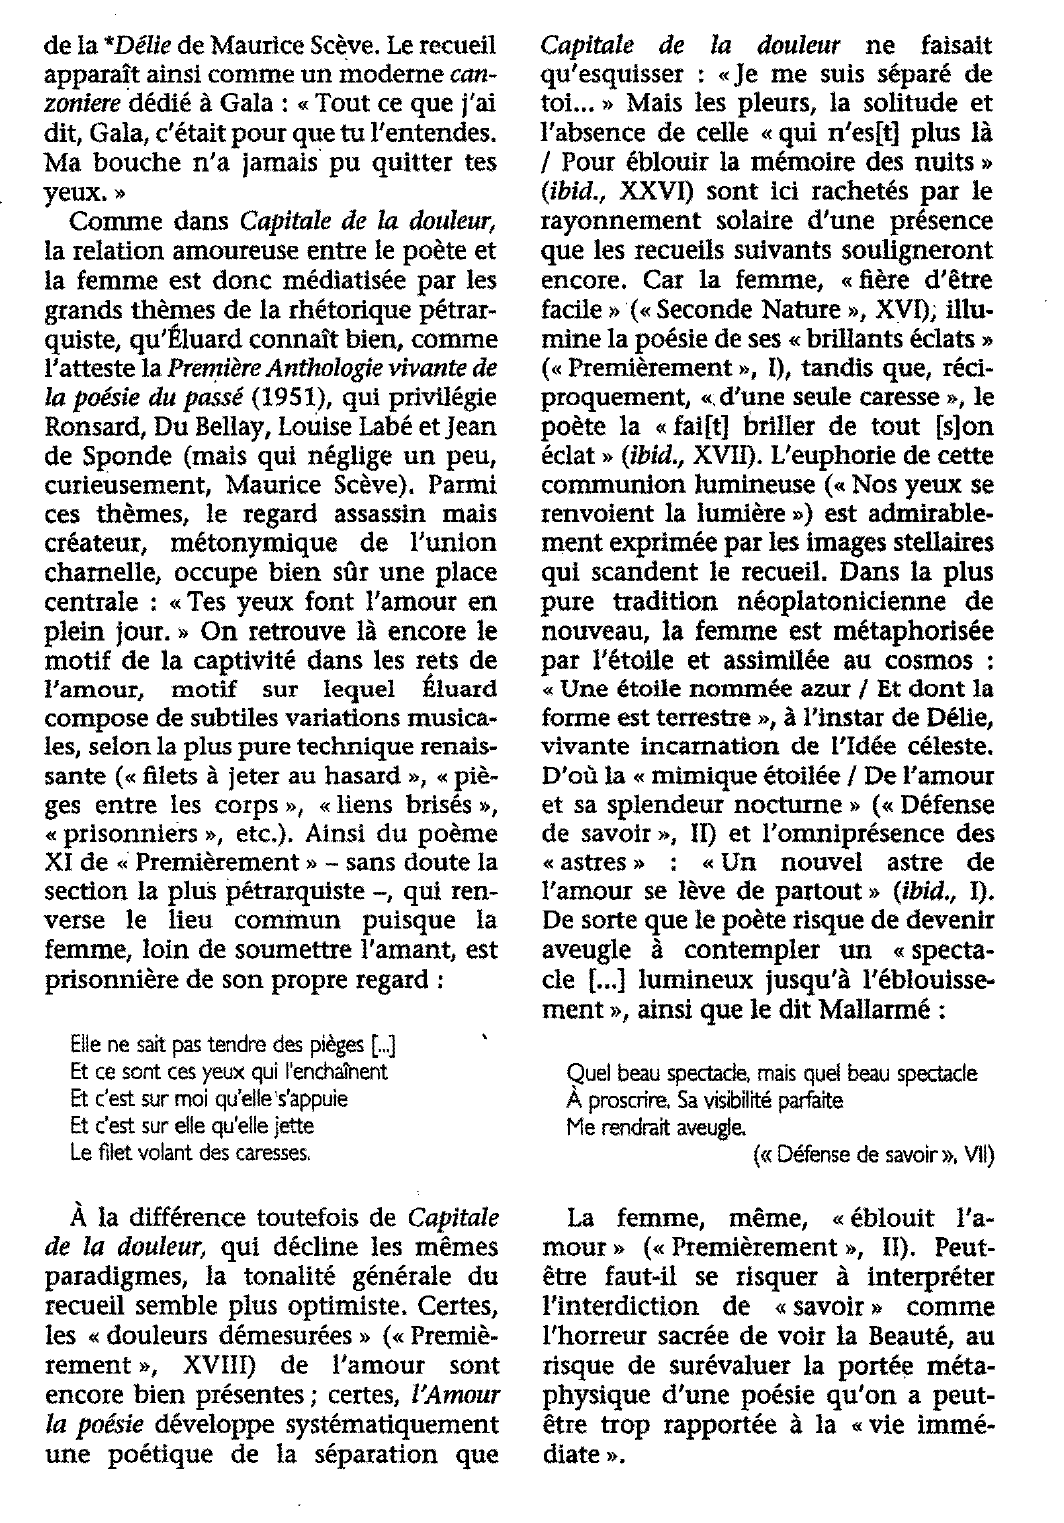 Prévisualisation du document Amour LA POÉSIE (L') de Paul Éluard (fiche de lecture)